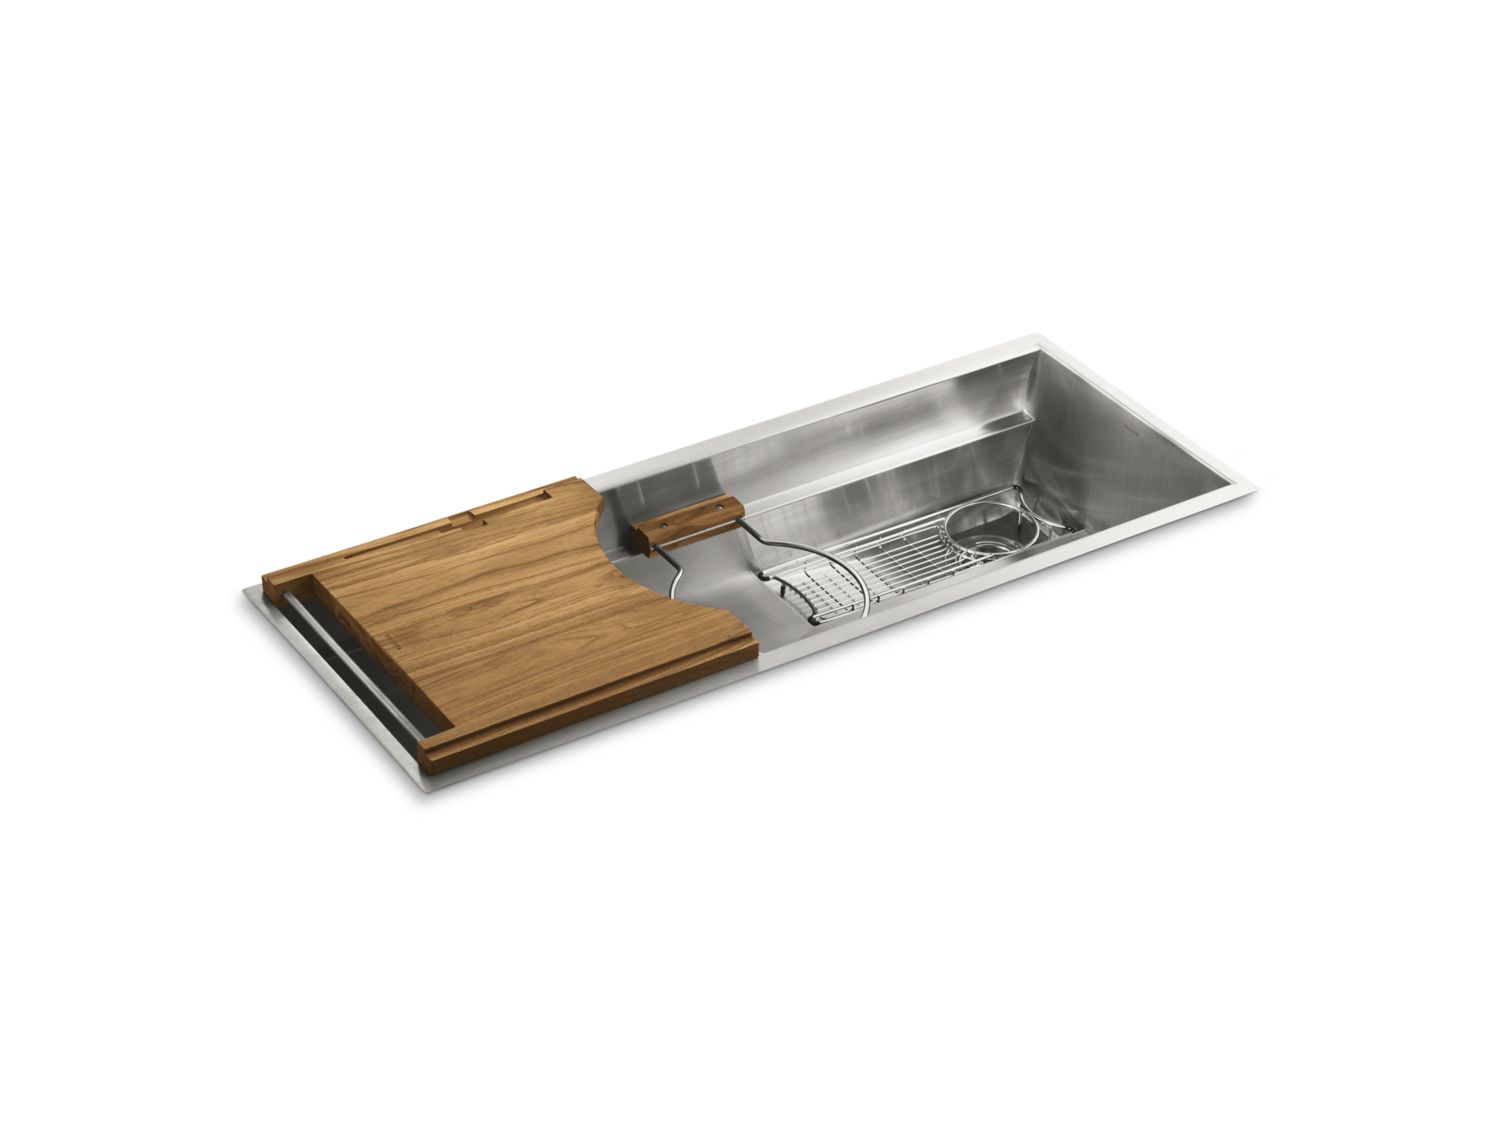 Multiere 45 Stainless Steel Kitchen Sink With Deluxe Accessories L20309 00 Kitchen Sinks Kallista Kallista